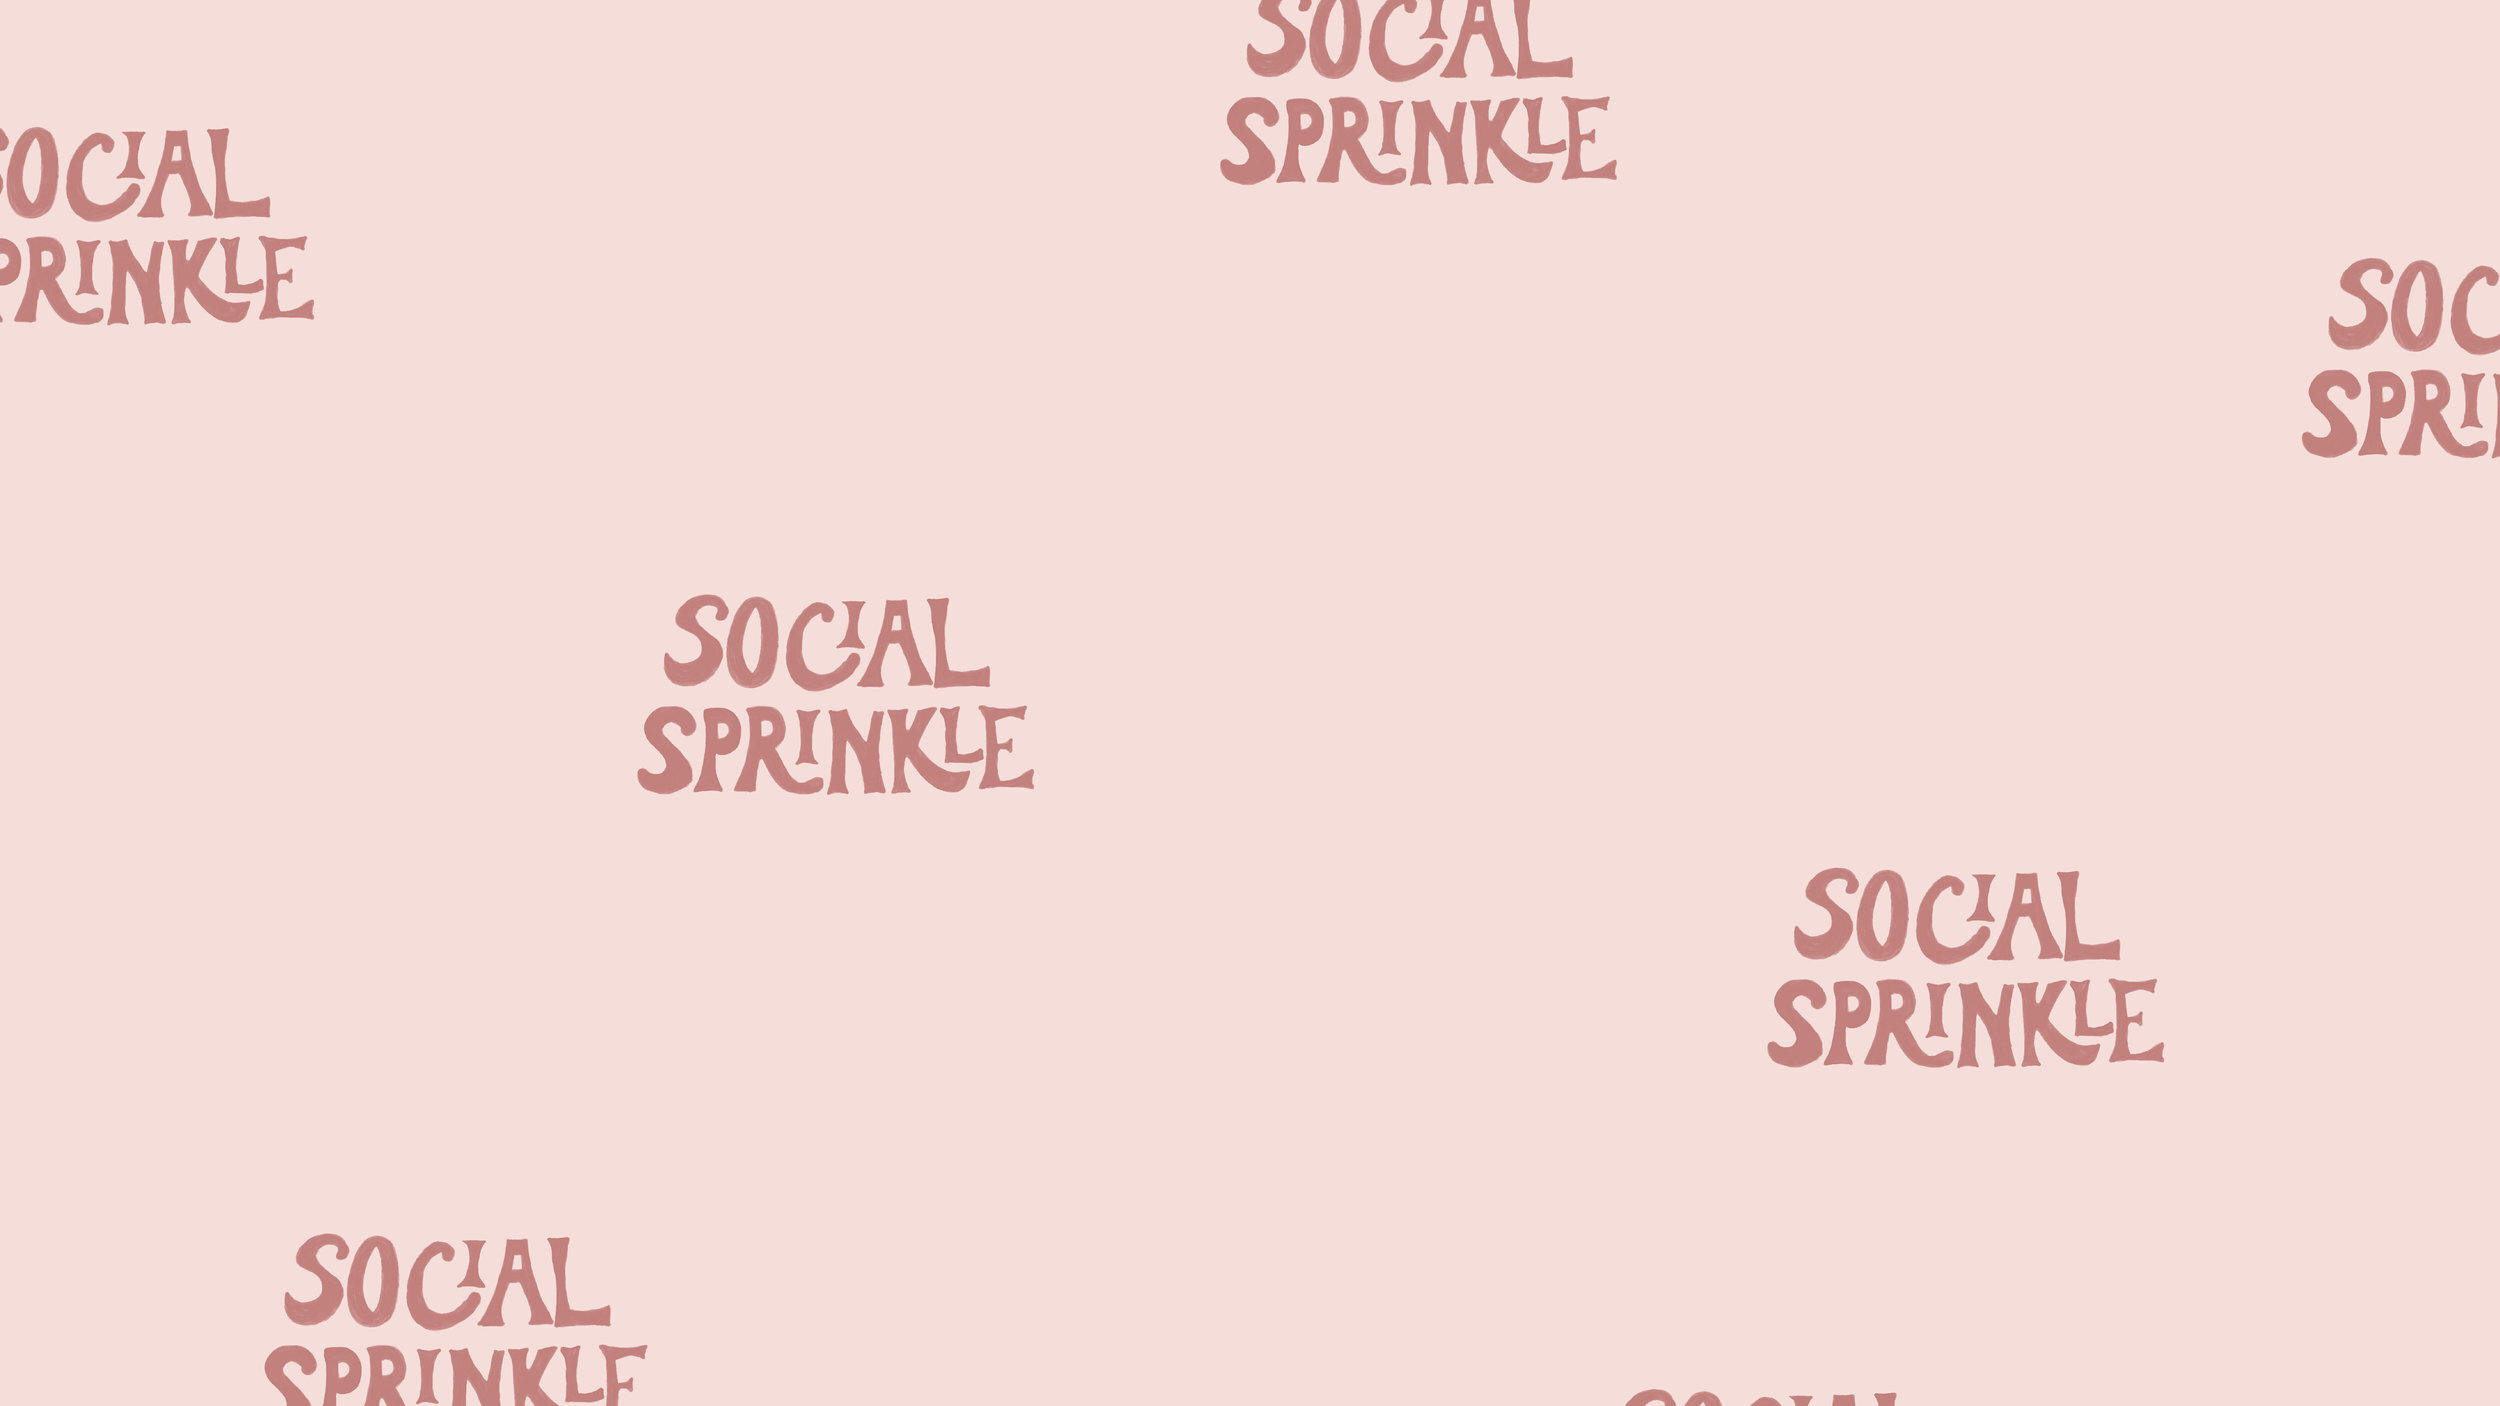 Social+Sprinkle-05.jpg